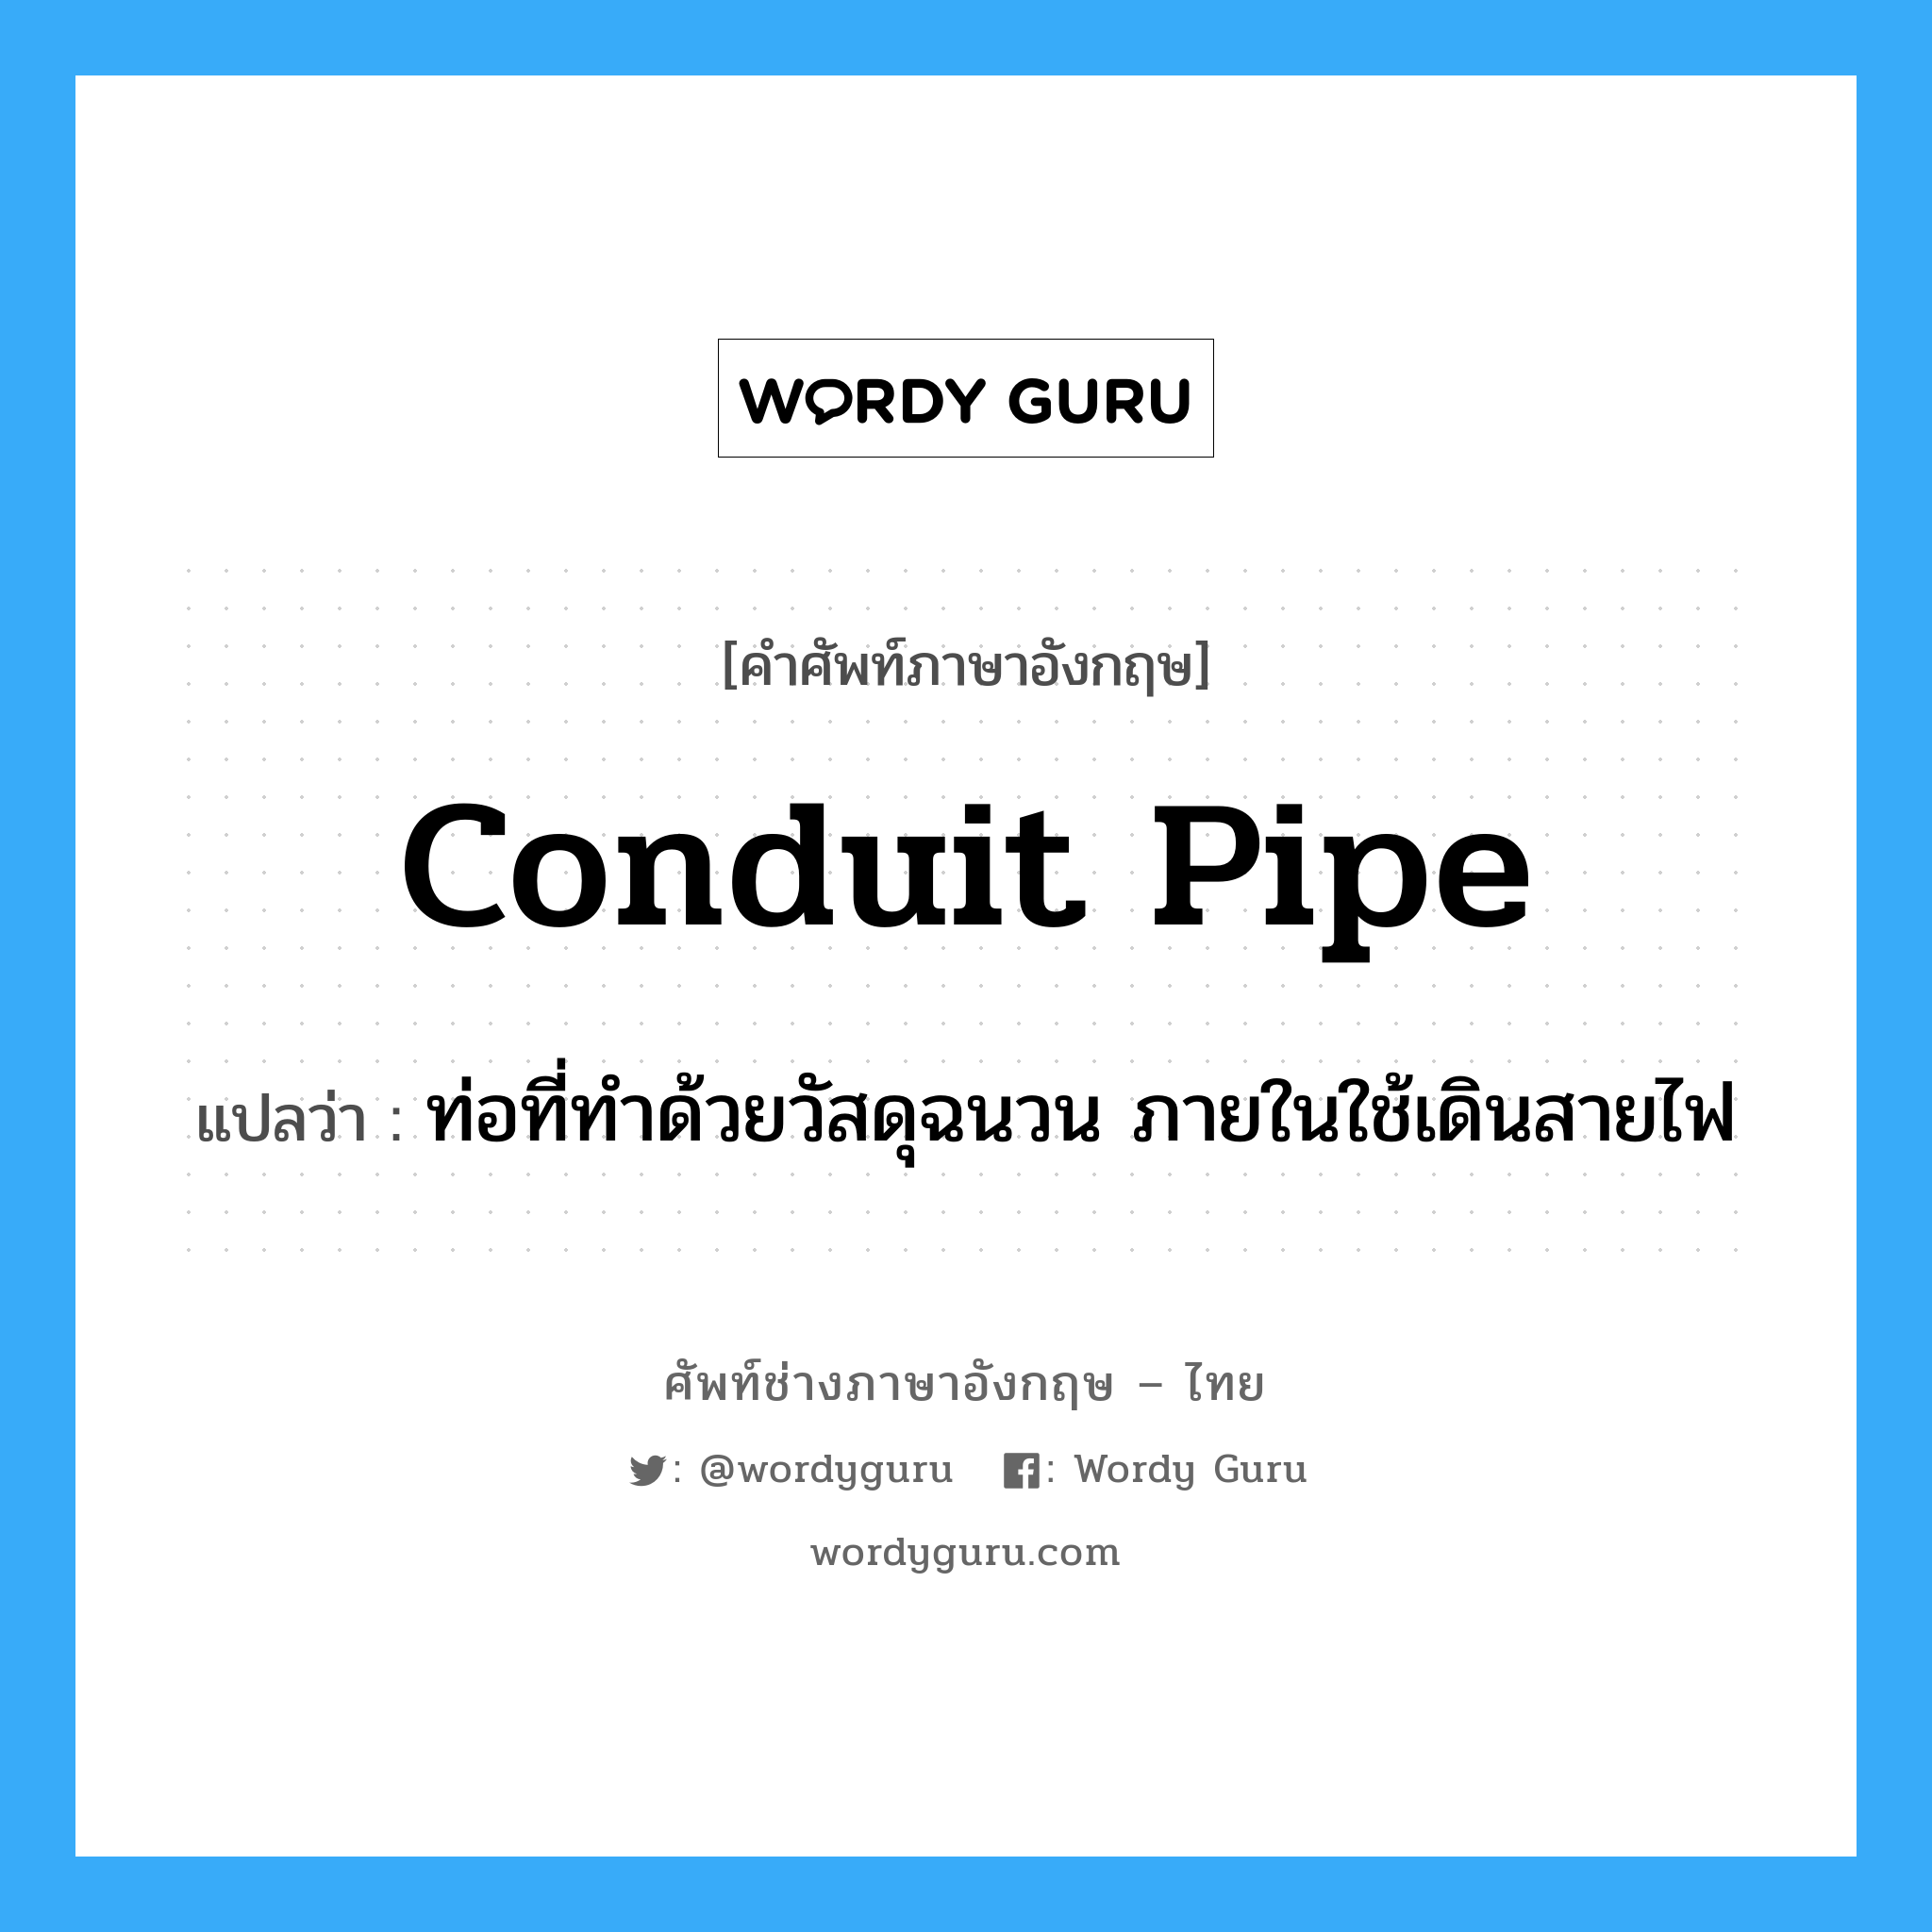 conduit pipe แปลว่า?, คำศัพท์ช่างภาษาอังกฤษ - ไทย conduit pipe คำศัพท์ภาษาอังกฤษ conduit pipe แปลว่า ท่อที่ทำด้วยวัสดุฉนวน ภายในใช้เดินสายไฟ